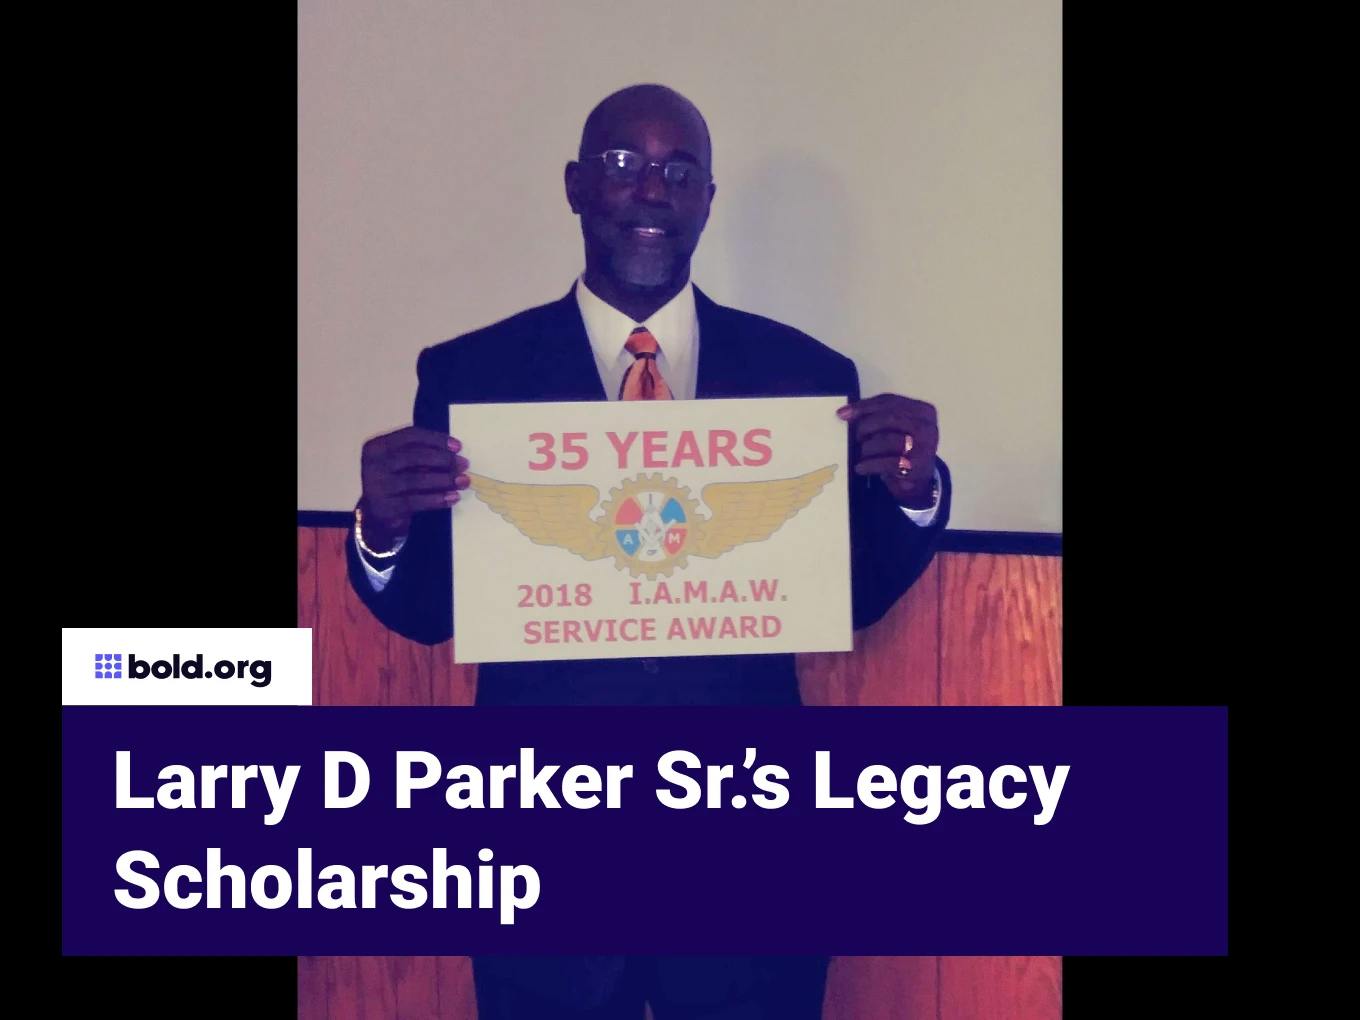 Larry D Parker Sr.’s Legacy Scholarship